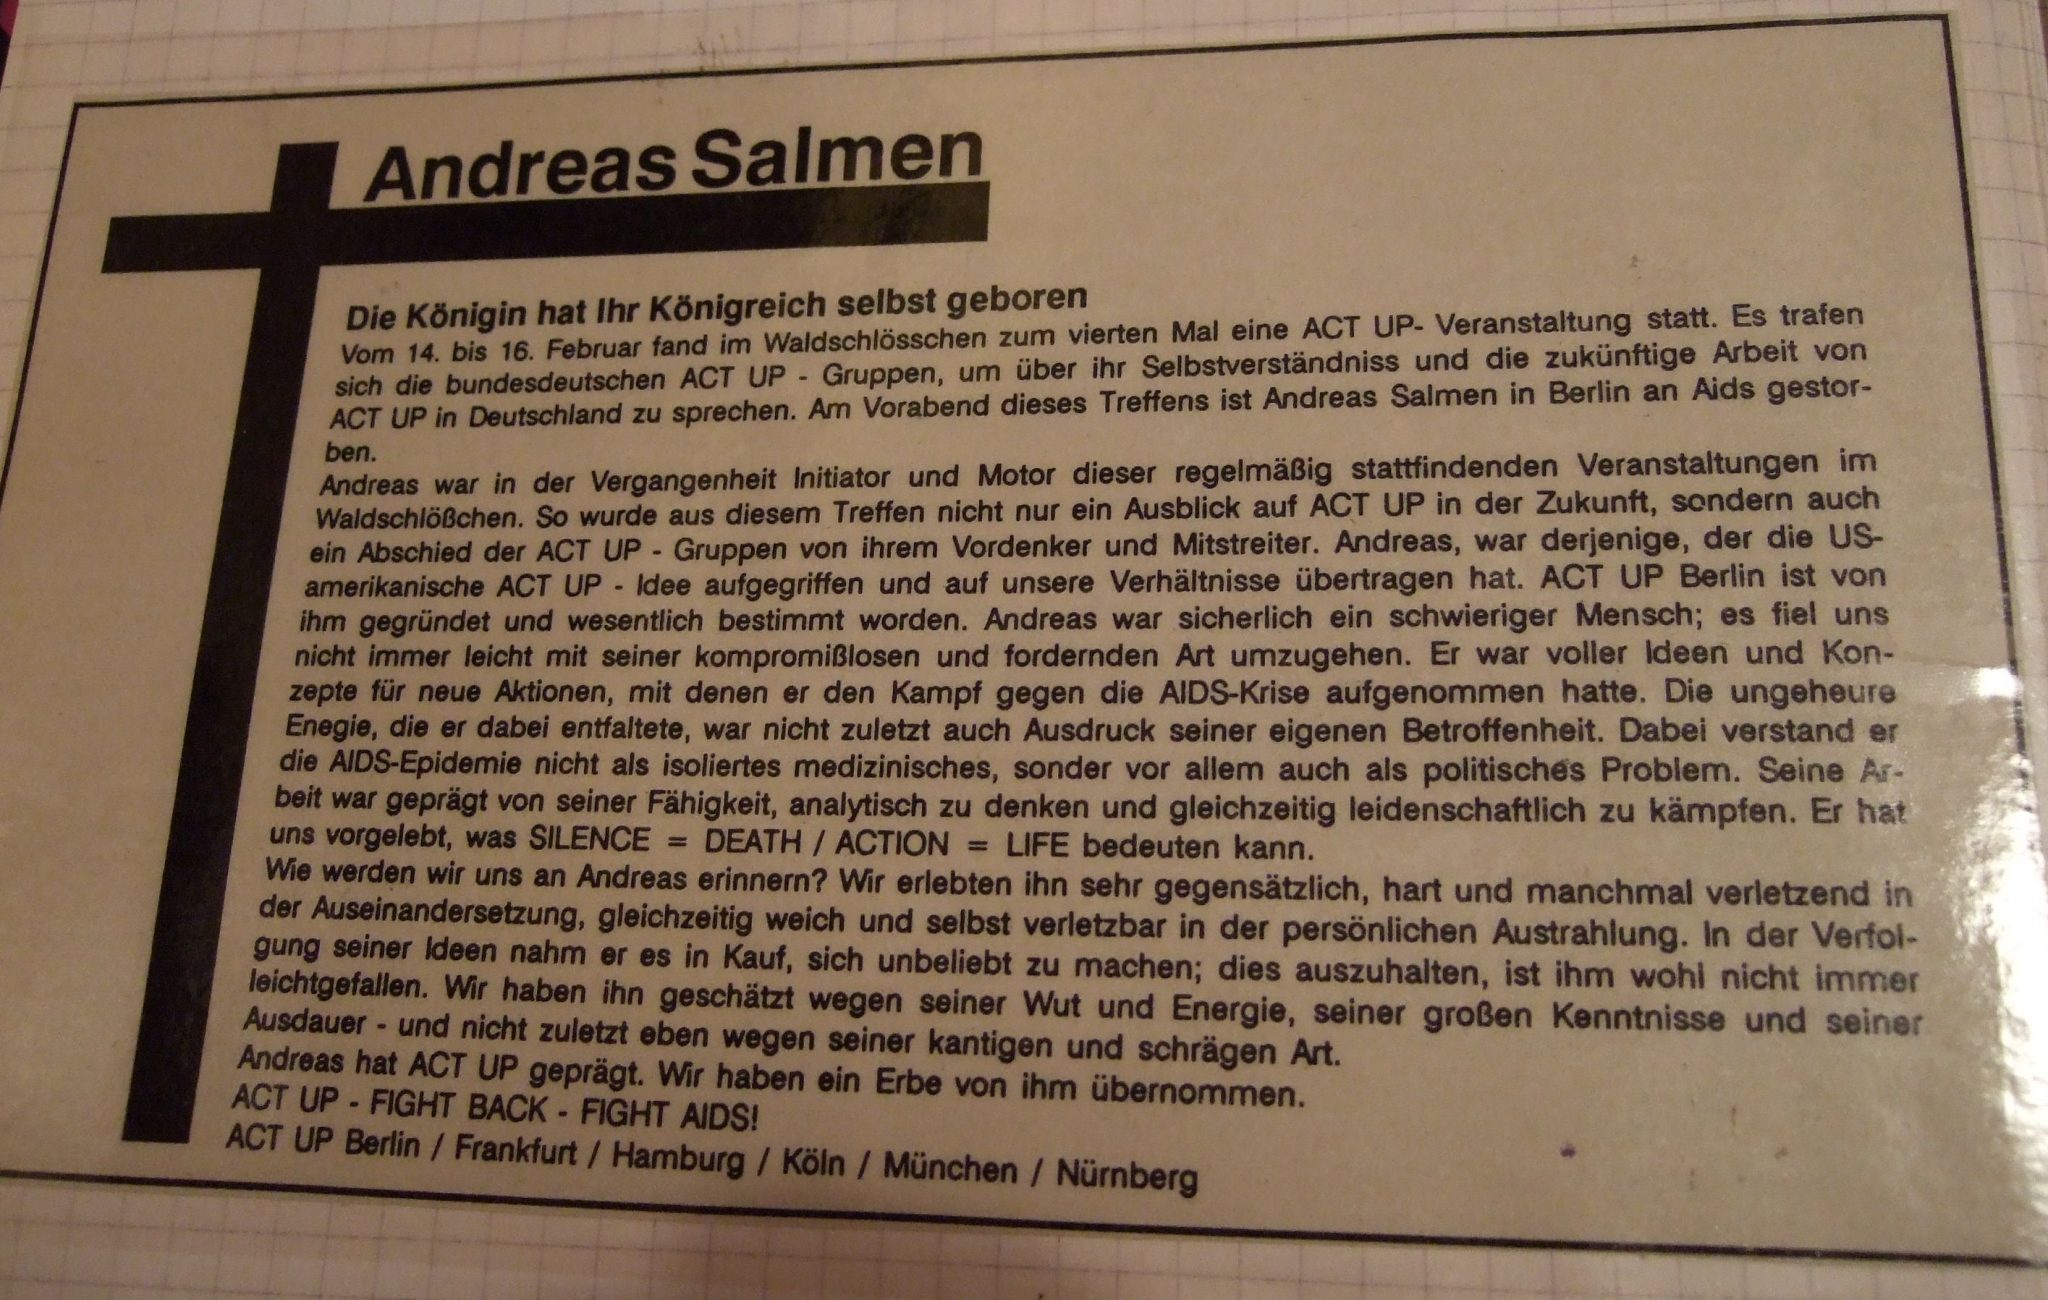 Andreas Salmen - Traueranzeige der ACT UP Gruppen in Deutschland